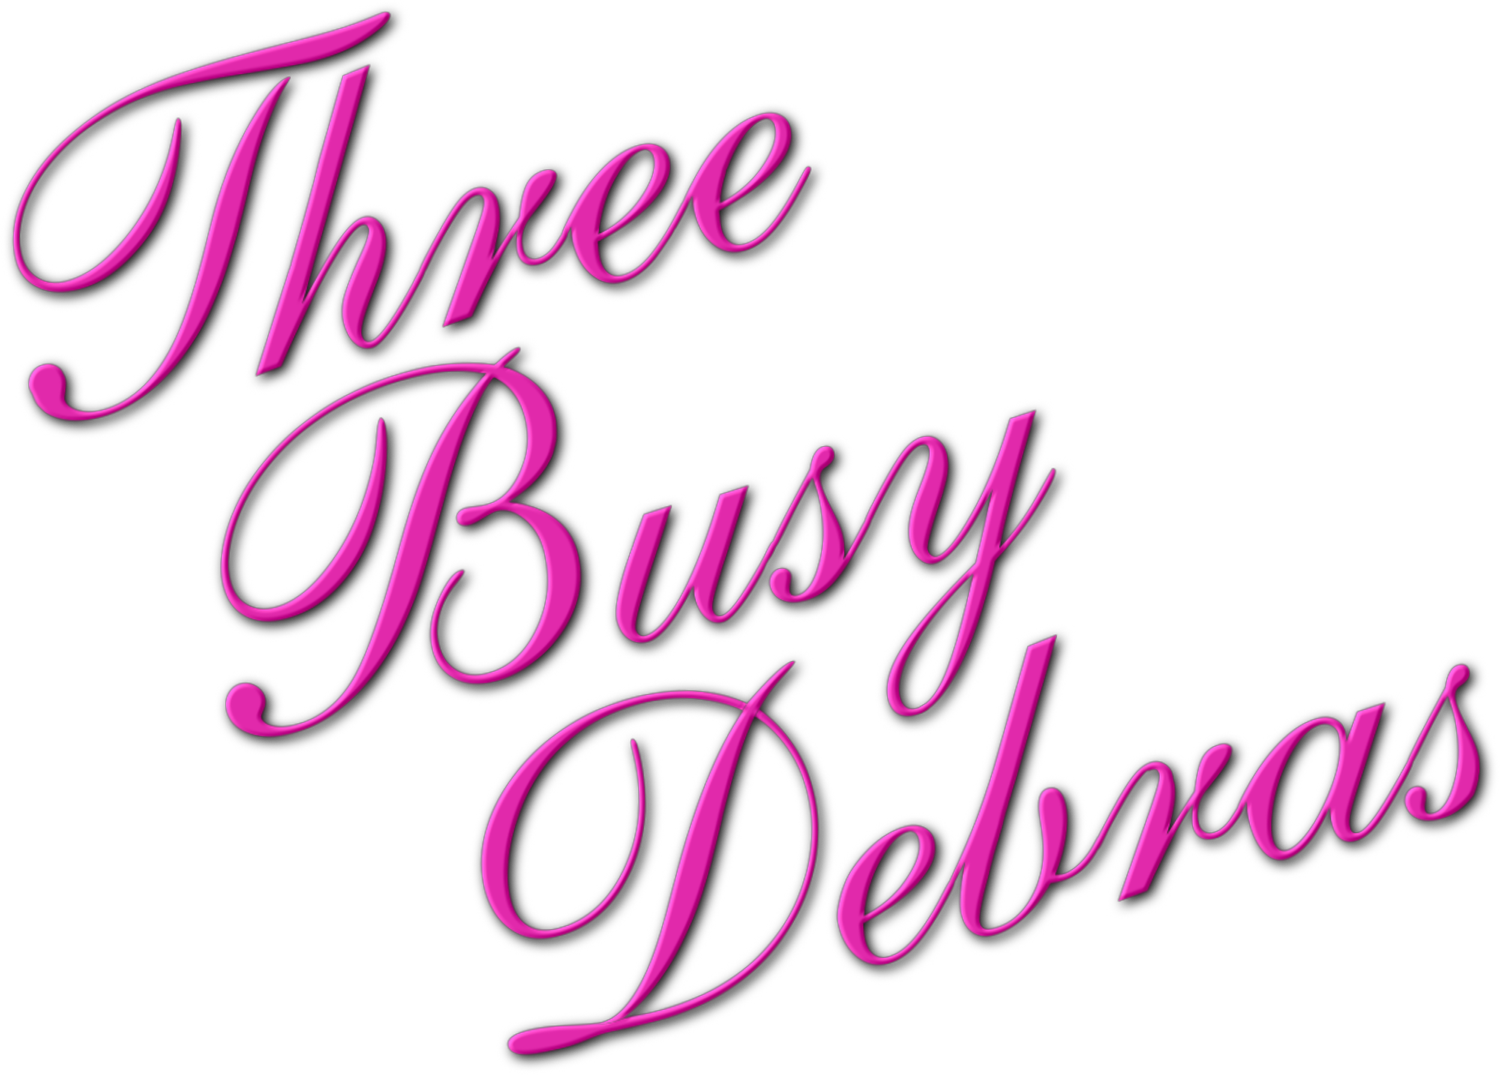 Three Busy Debras